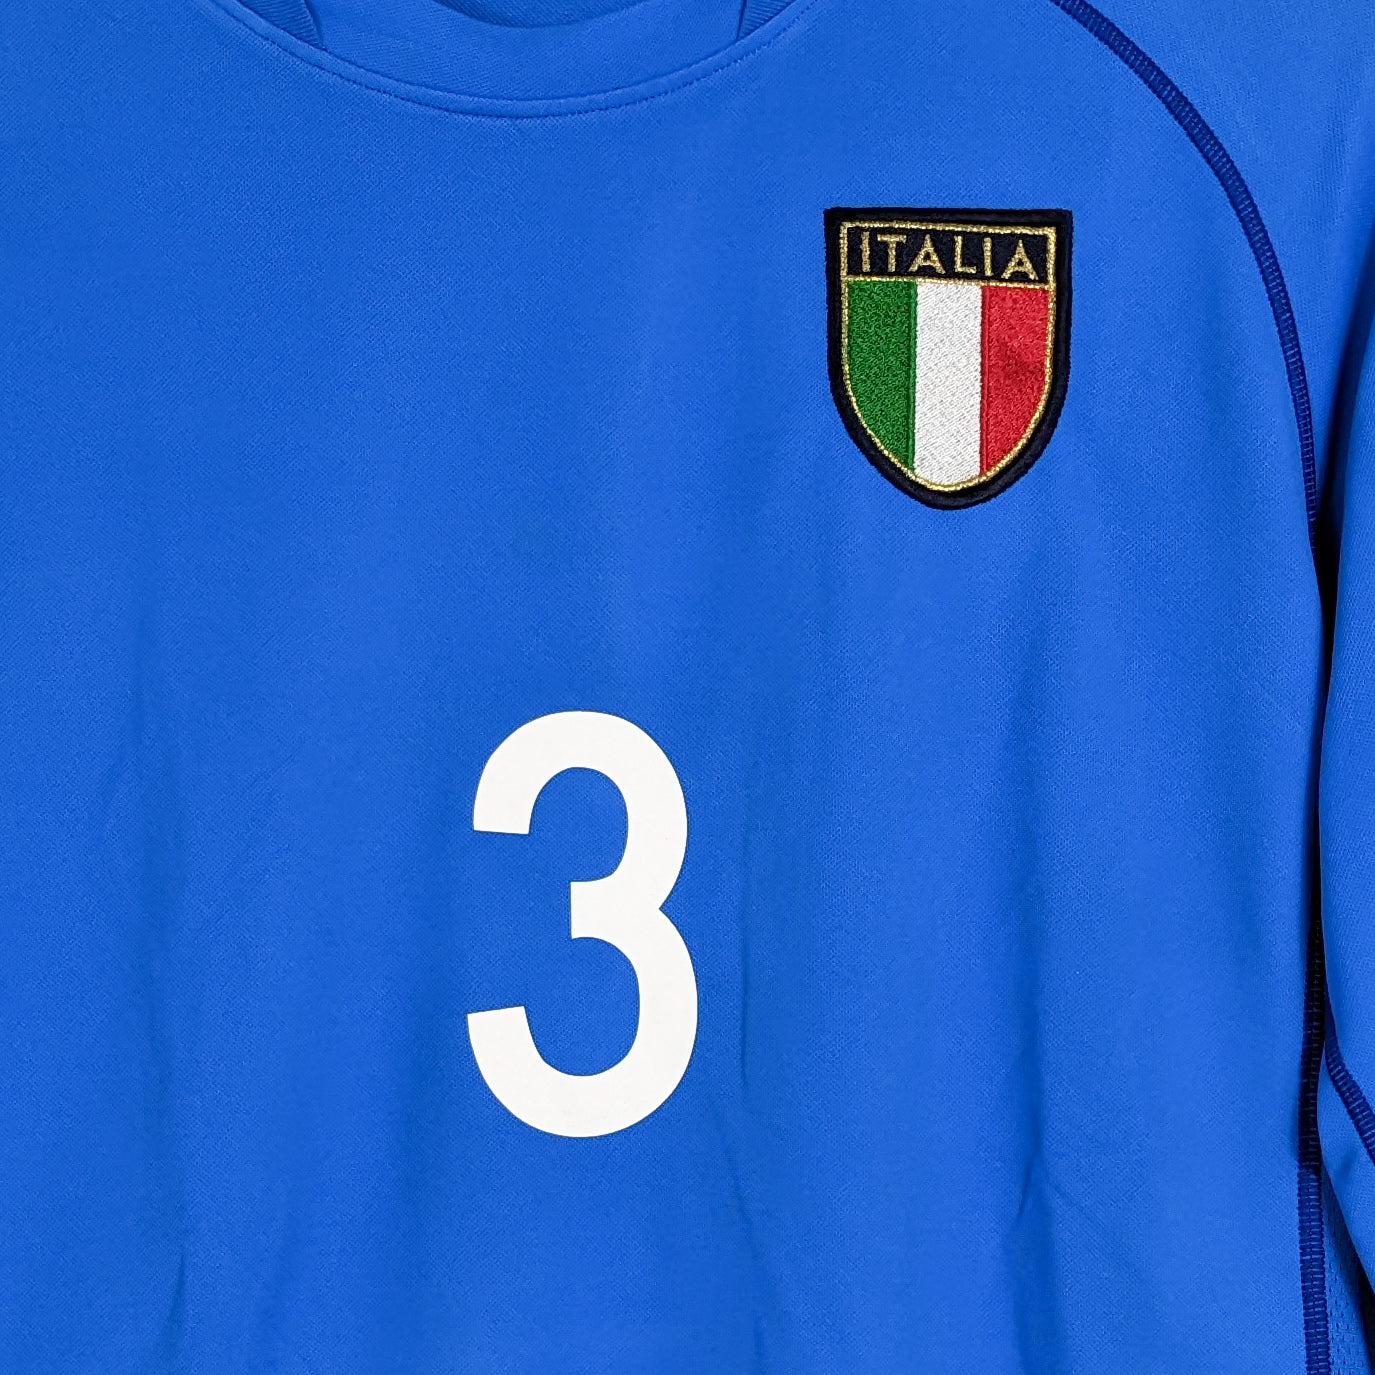 Authentic Italy 2002 Home - Maldini #3 Size M